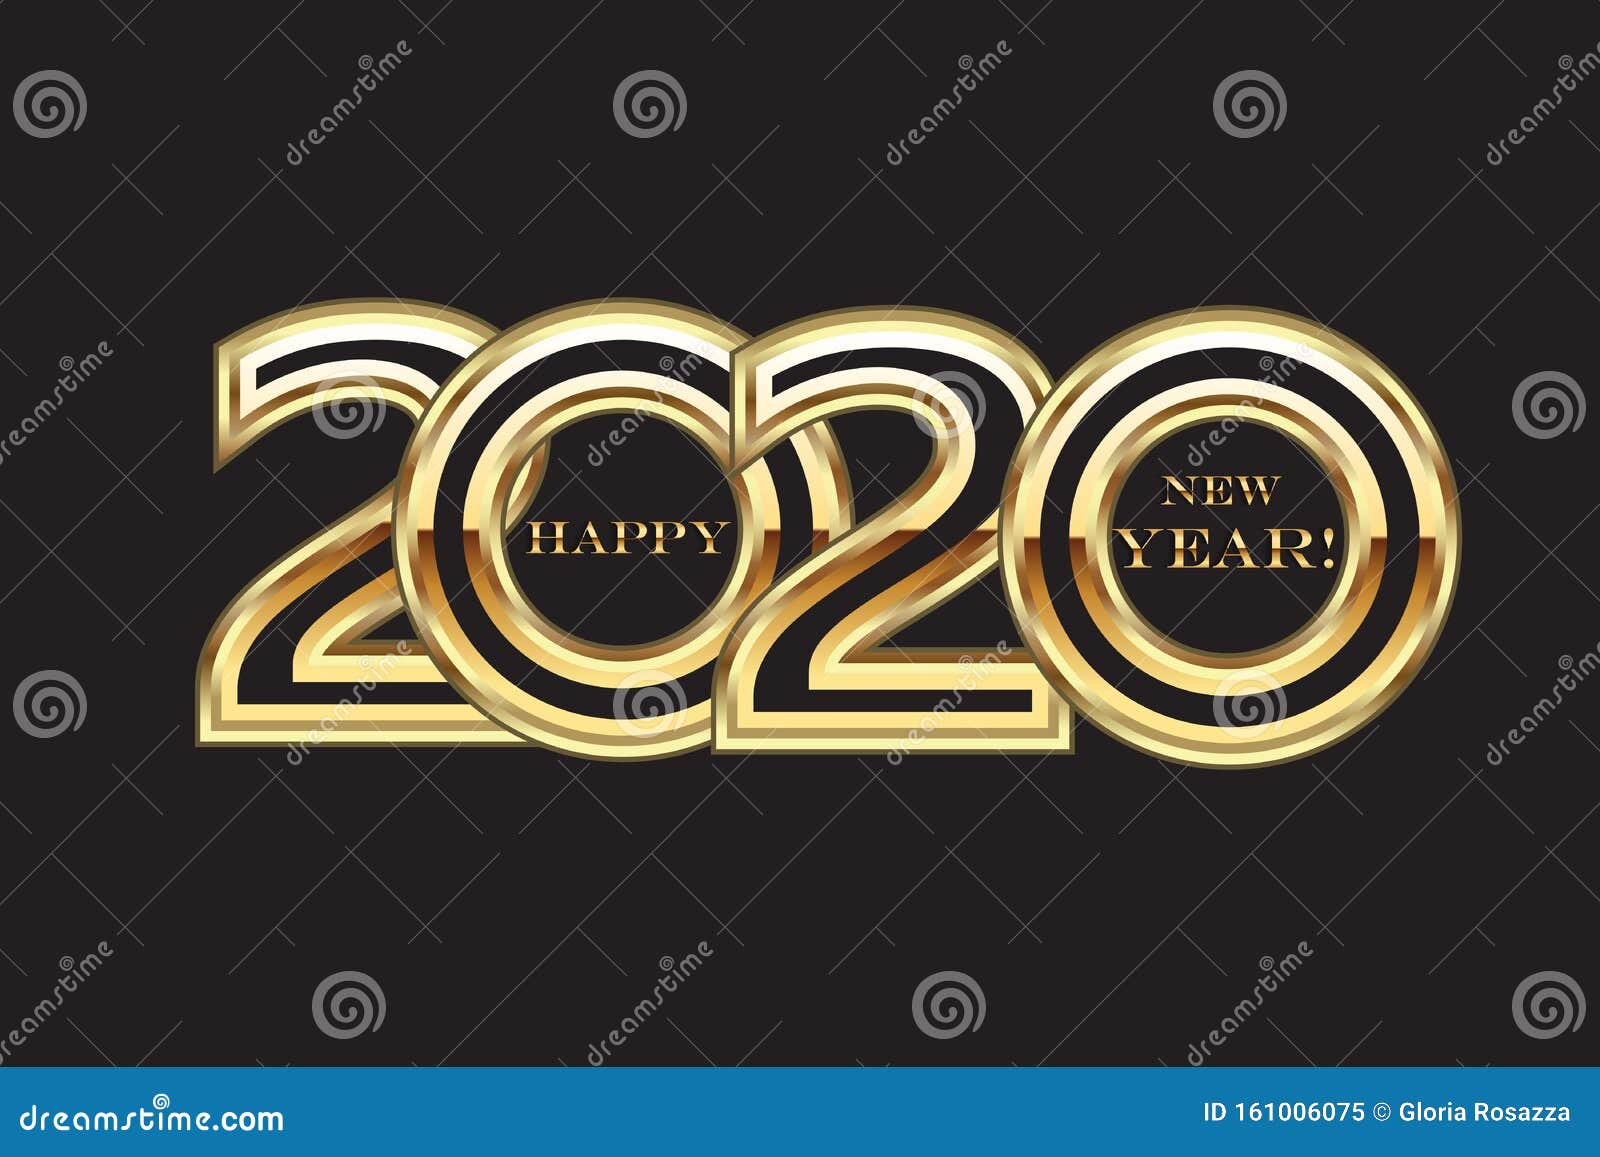 Happy 2020 Neues Jahr Gold Party Karte Vektor Bild Vektor Abbildung